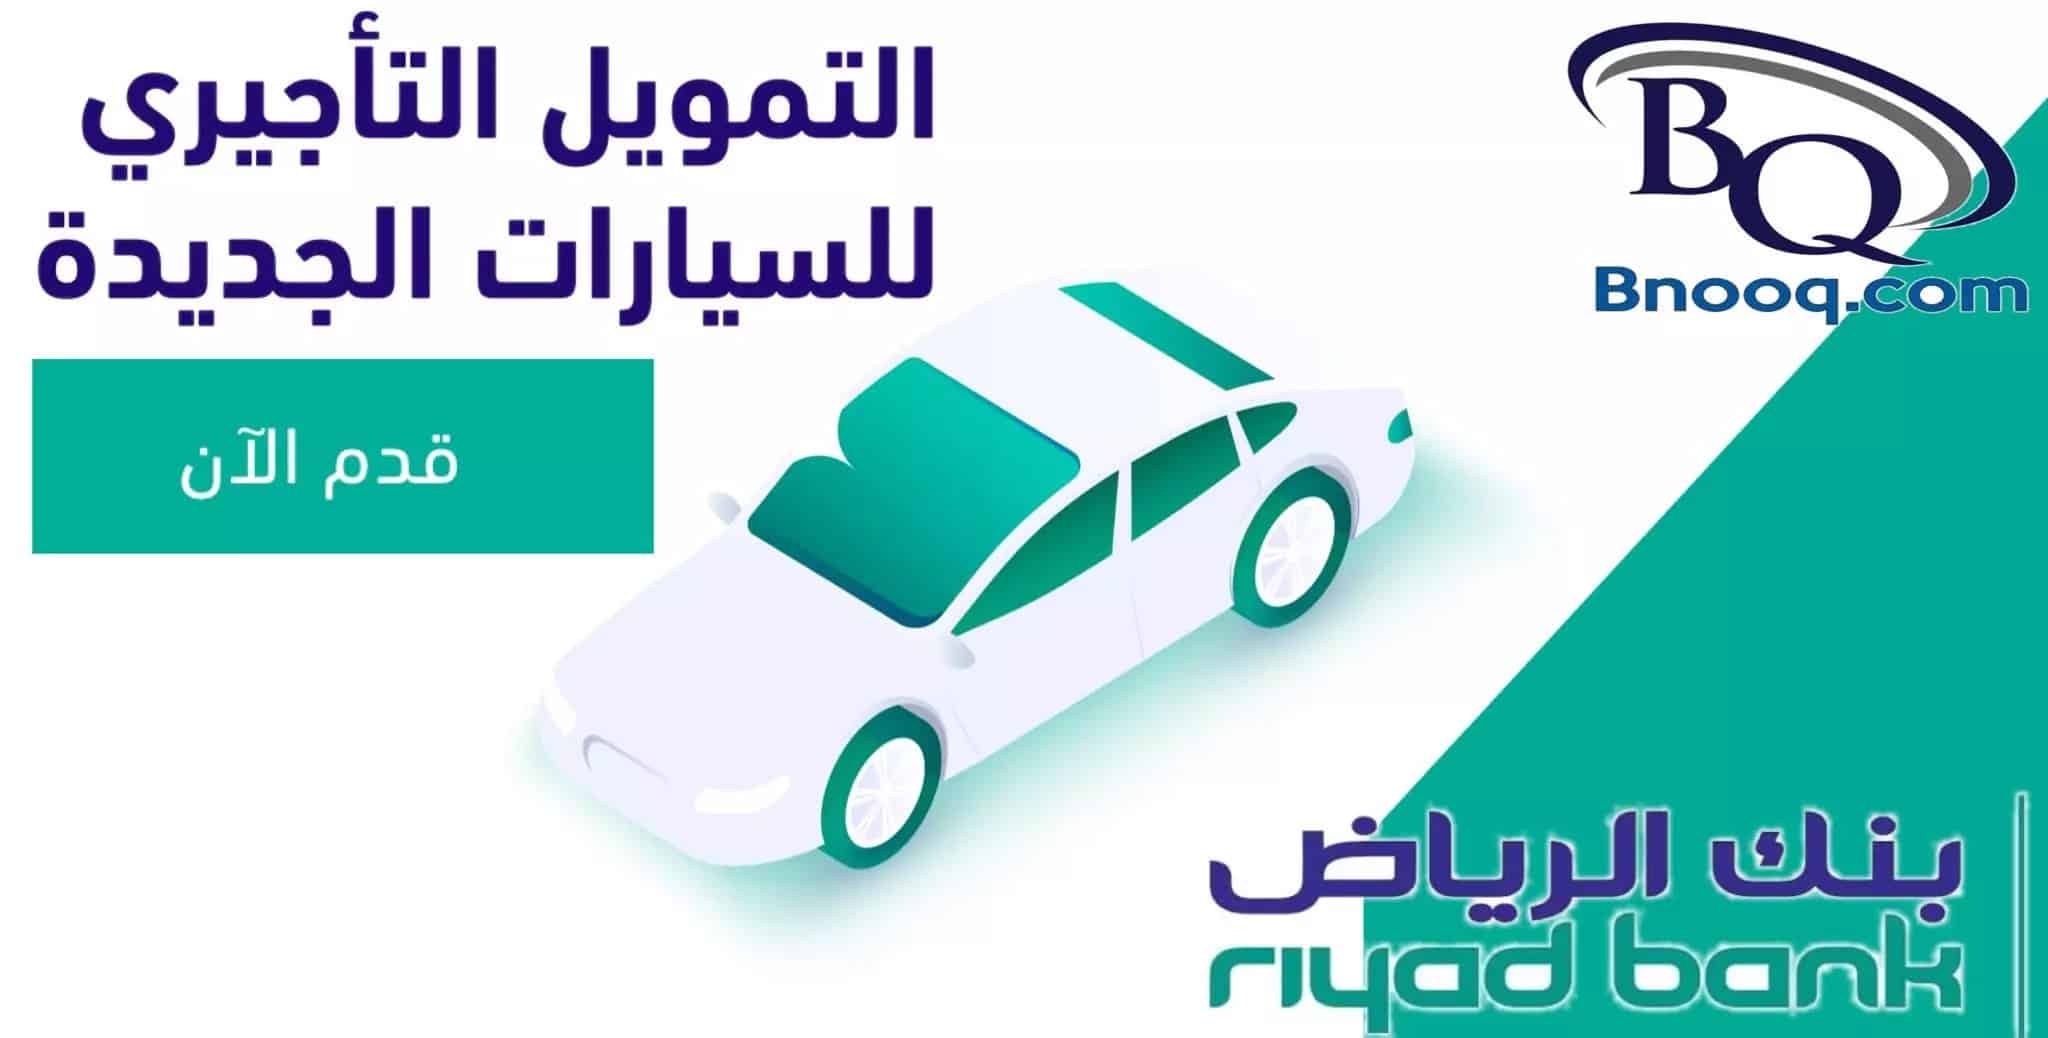 تمويل السيارات للمواطنين والمقيمين بفترة سداد 60 شهر من بنك الرياض